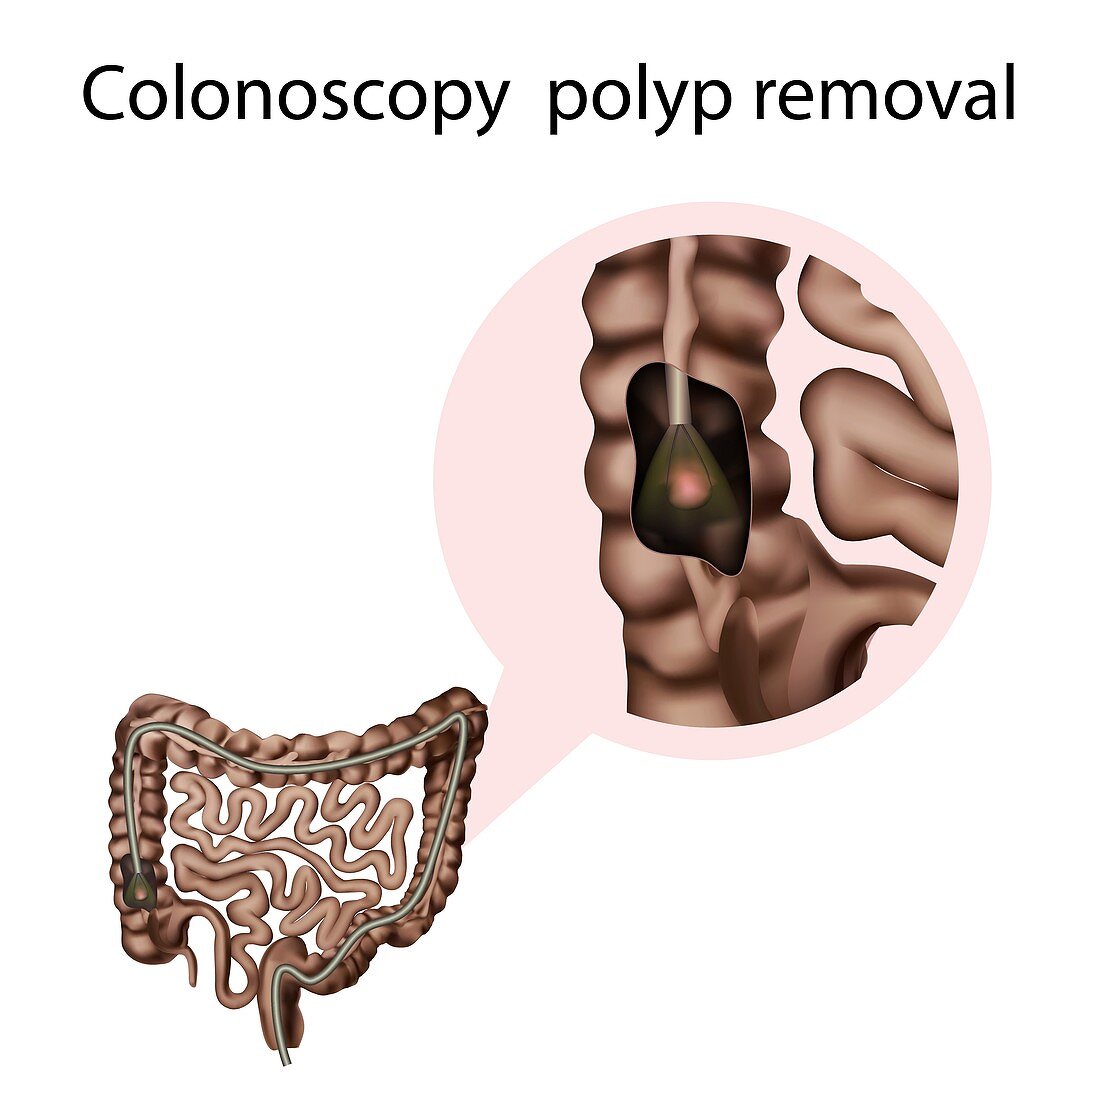 Colonoscopy polyp removal,illustration